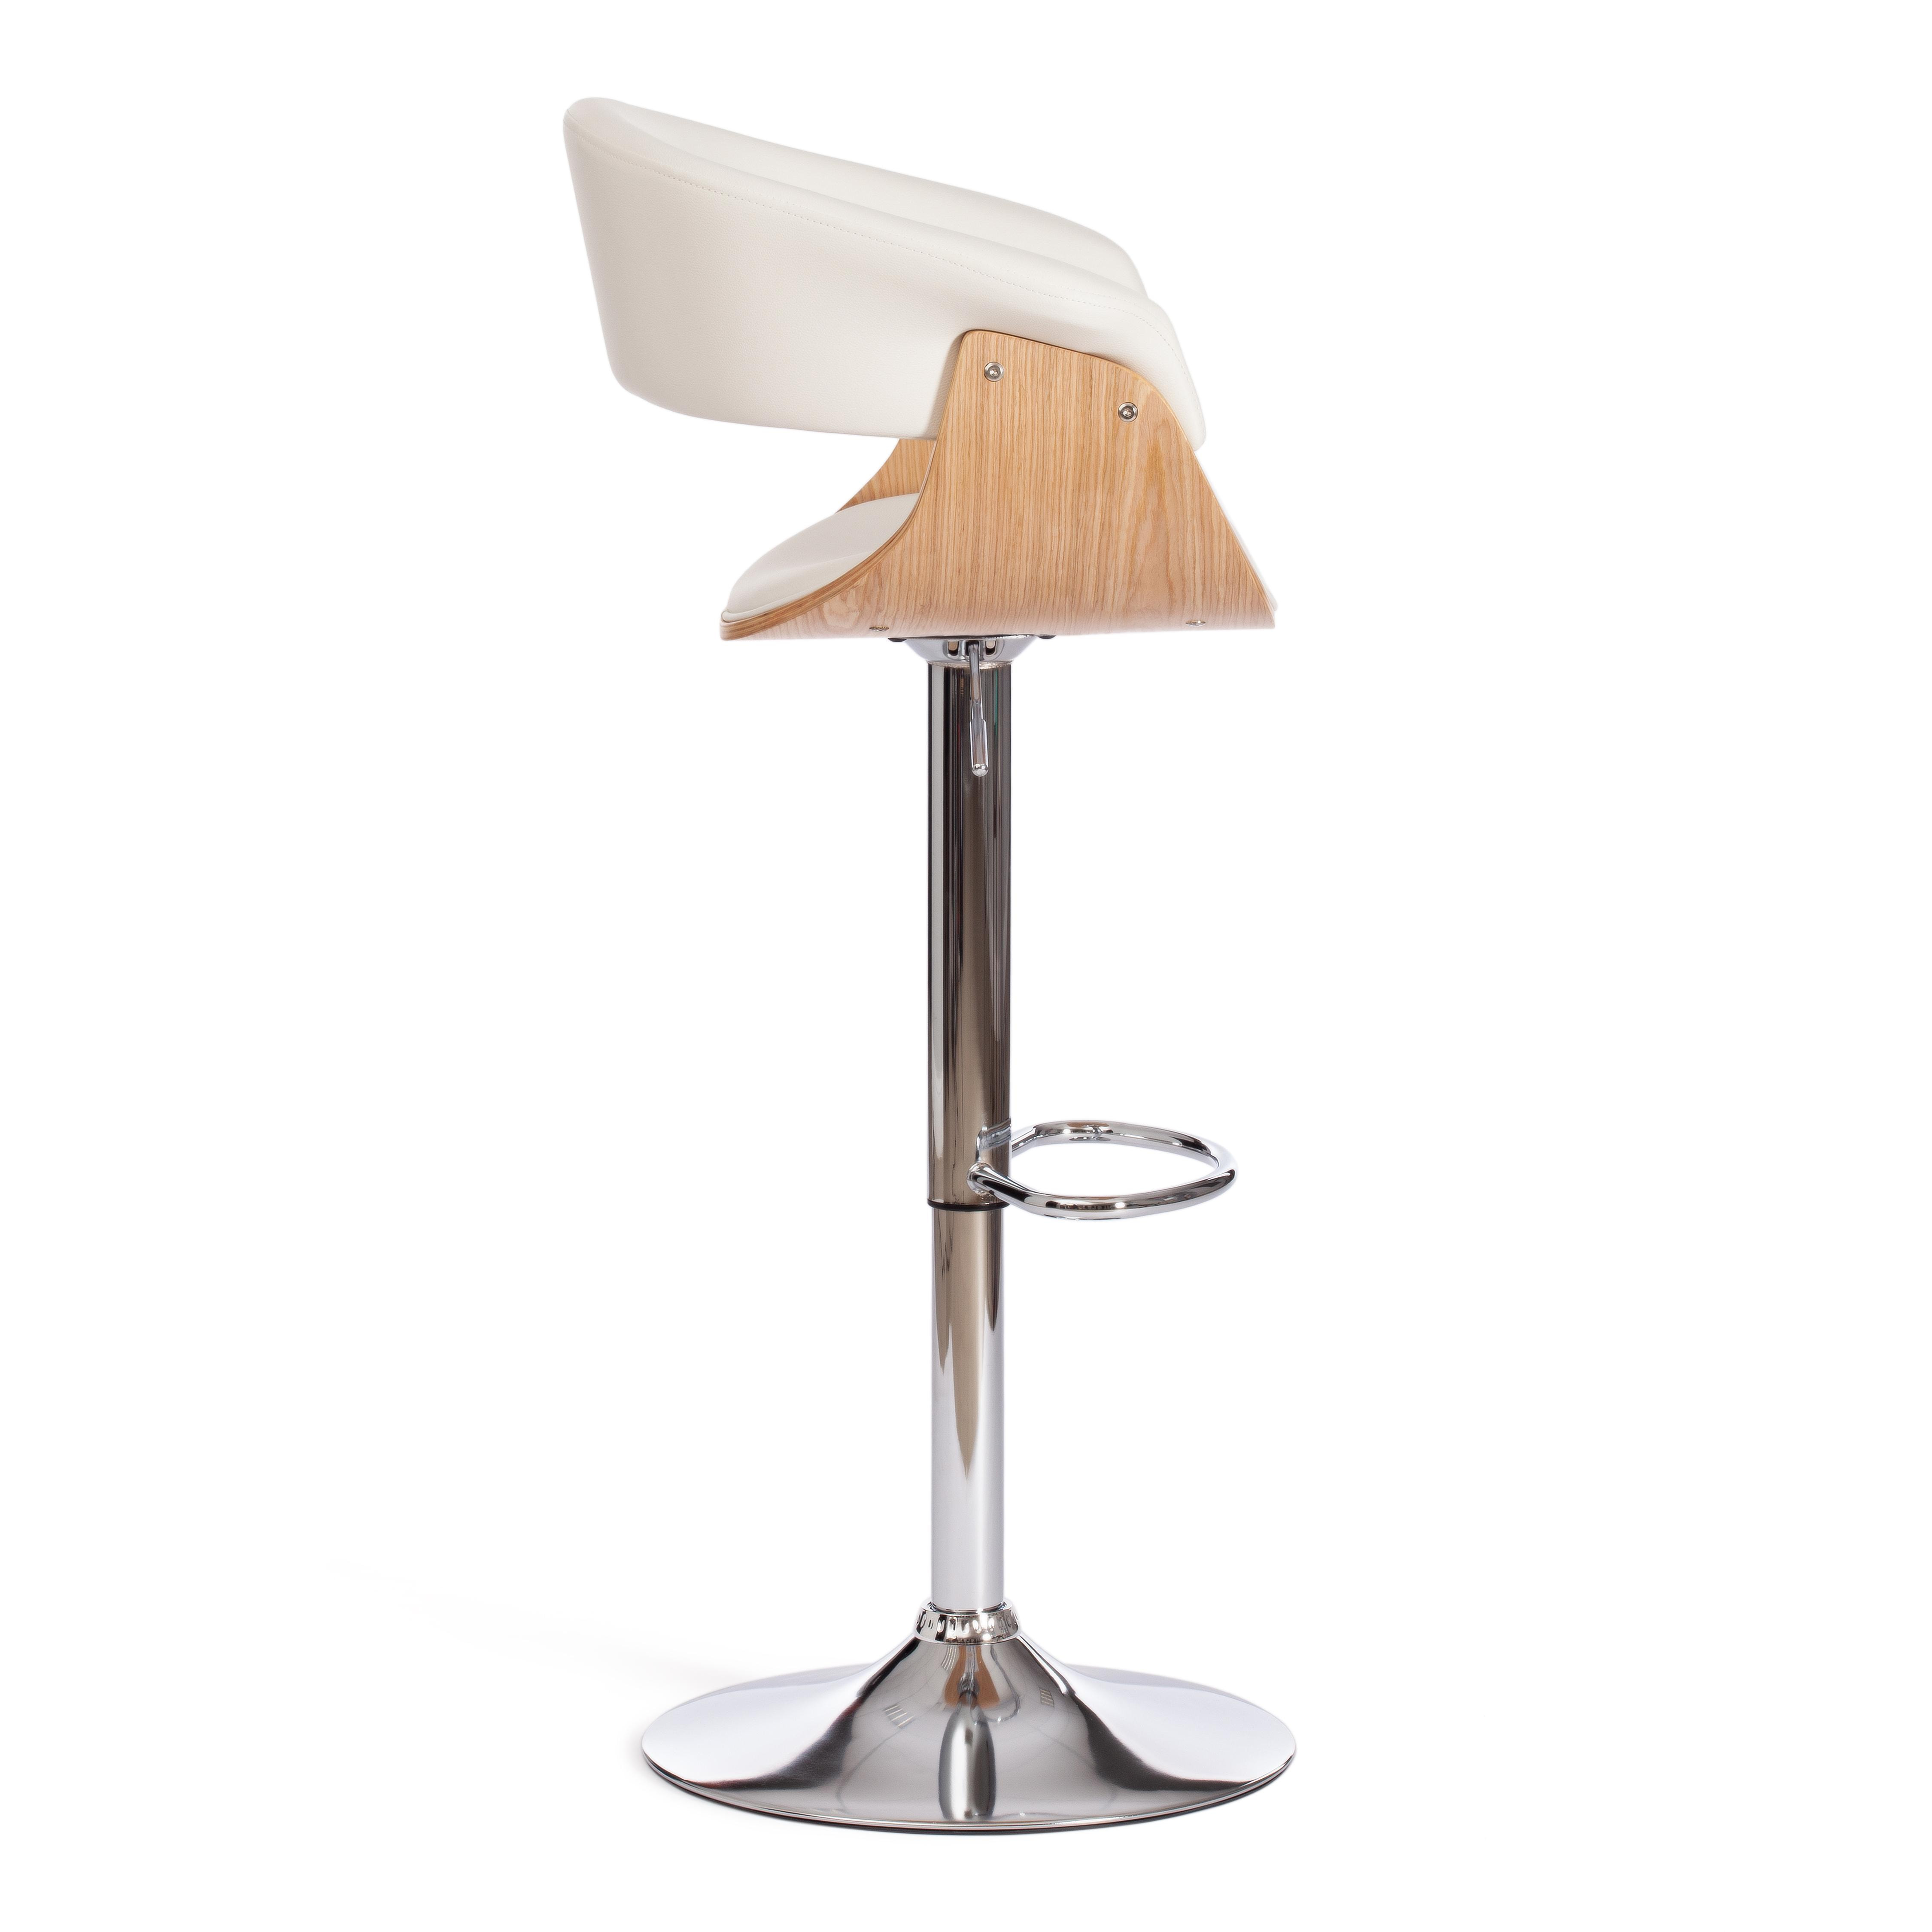 Барный стул VIMTA (mod.4021S) металл/дерево/экокожа, 60х51х91,5-112,5 см, высота сиденья 61,5-82,5 см, белый/натуральный/хром